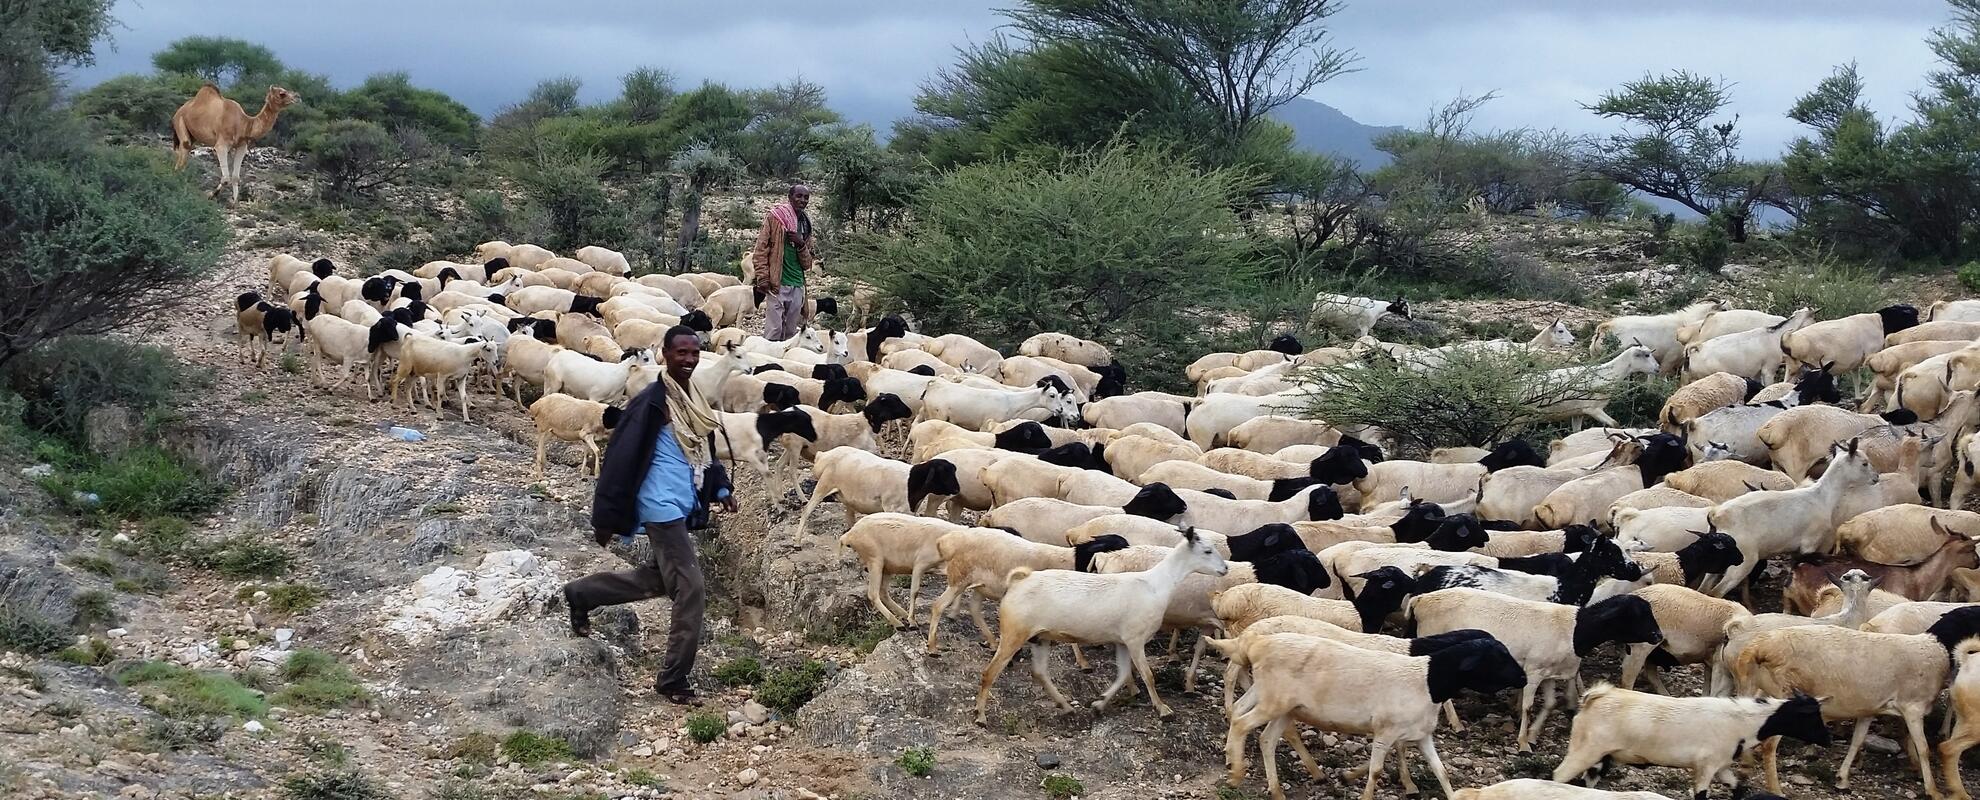 Somali sheep and goats